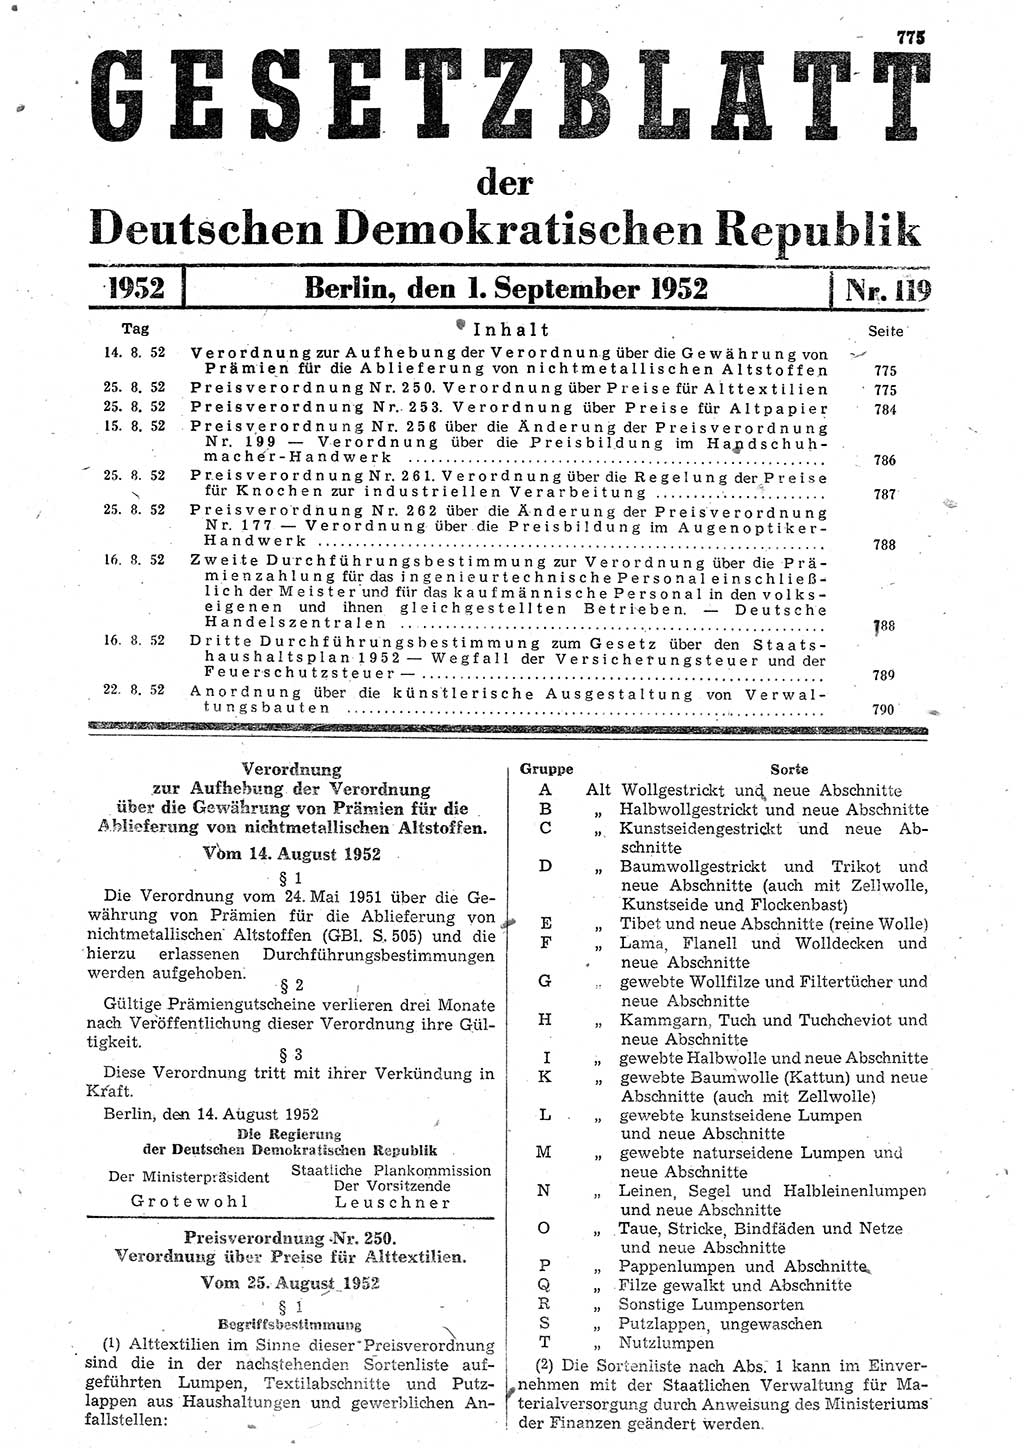 Gesetzblatt (GBl.) der Deutschen Demokratischen Republik (DDR) 1952, Seite 775 (GBl. DDR 1952, S. 775)